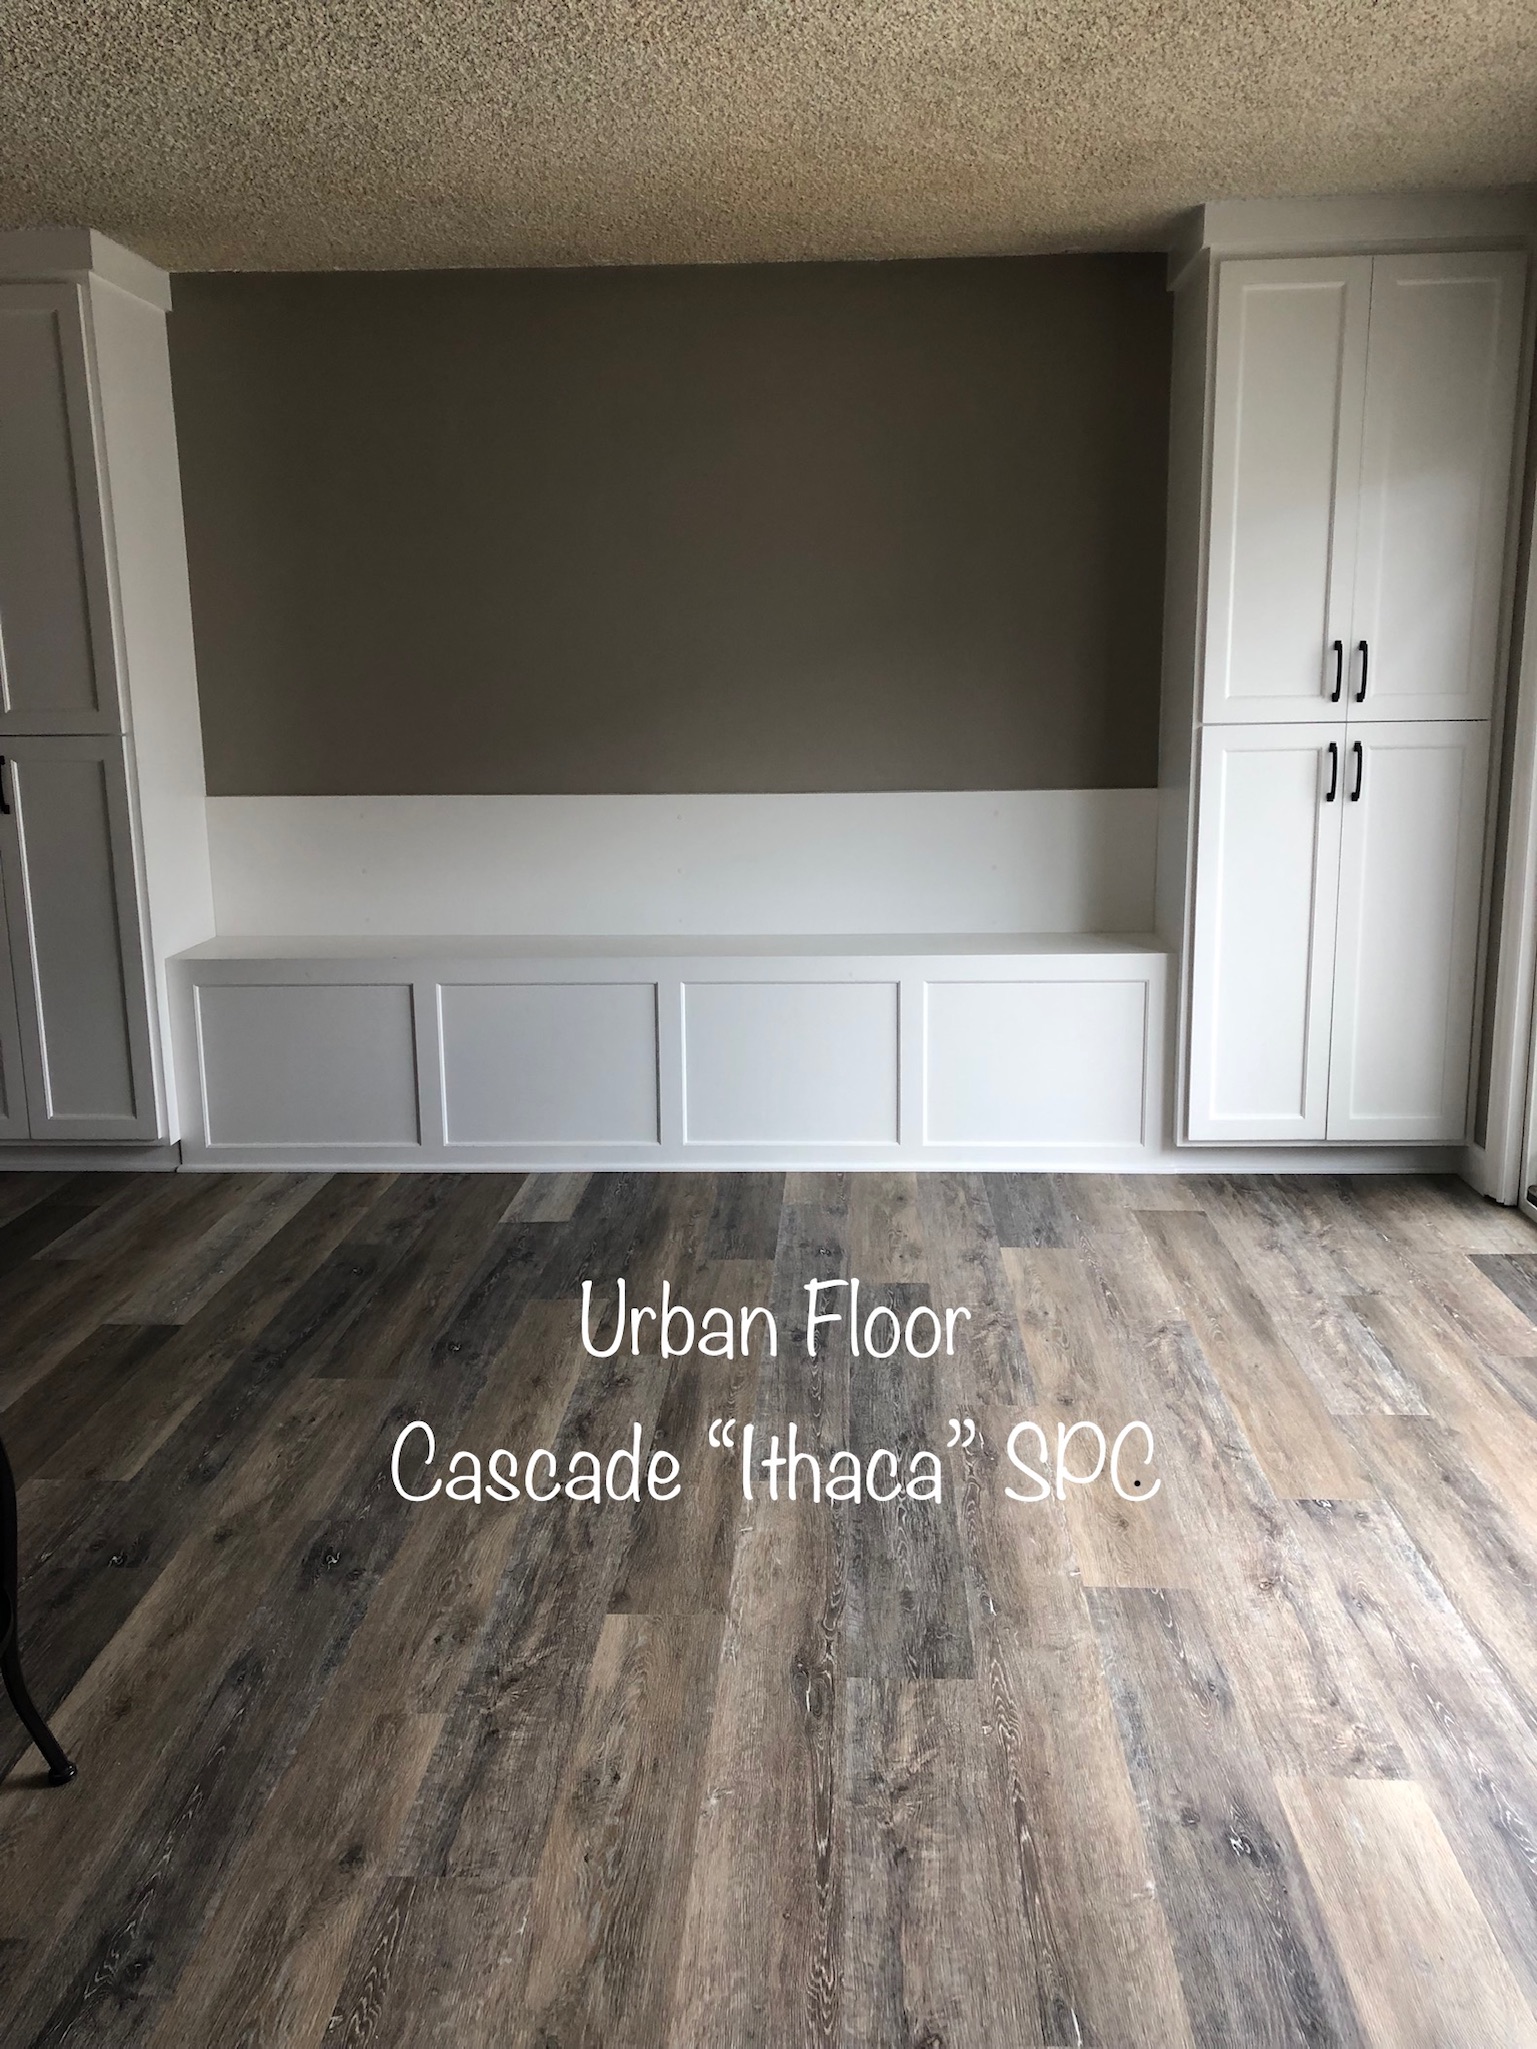 Urban Floor Cascade "Ithaca"